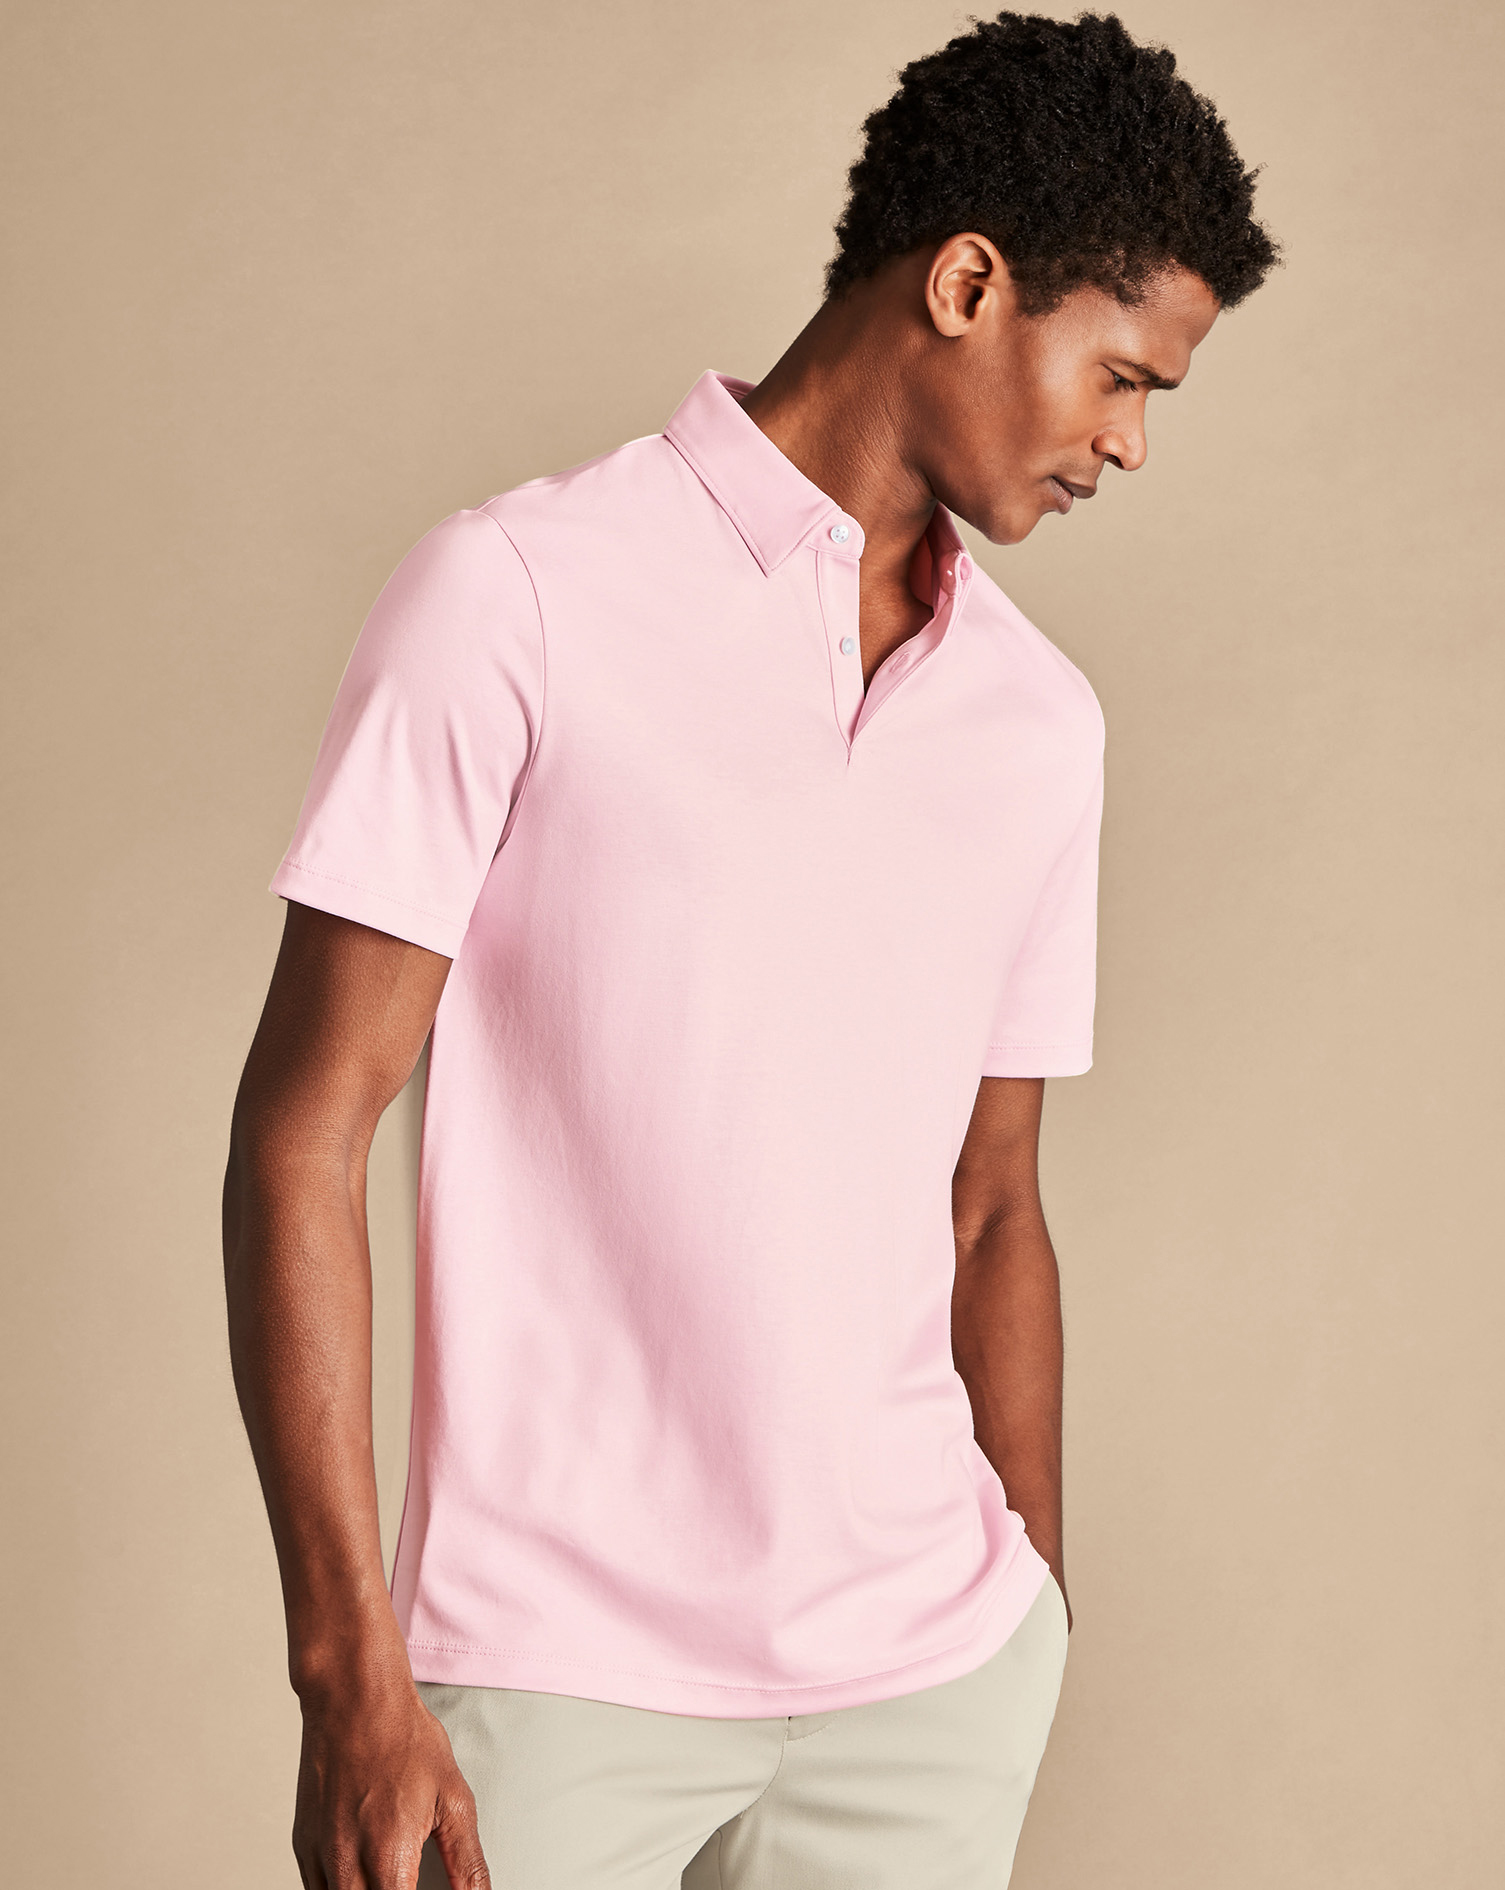 Men's Charles Tyrwhitt Smart Jersey Polo Shirt - Light Pink Size XXXL Cotton
